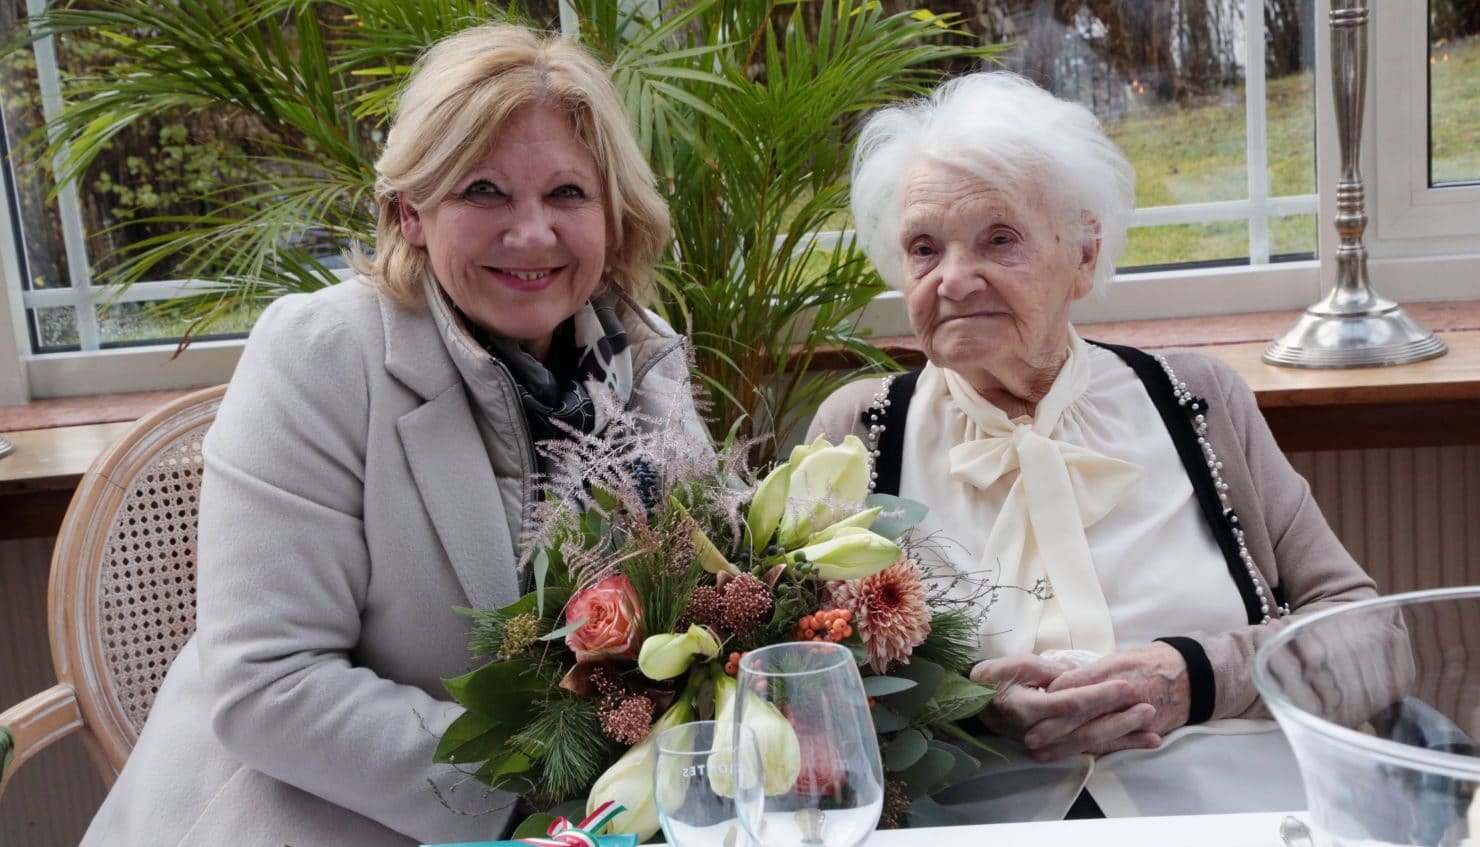 Bürgermeisterin Dr. Maria-Luise Mathiaschitz gratulierte Maria Blank zum hundertsten Geburtstag.